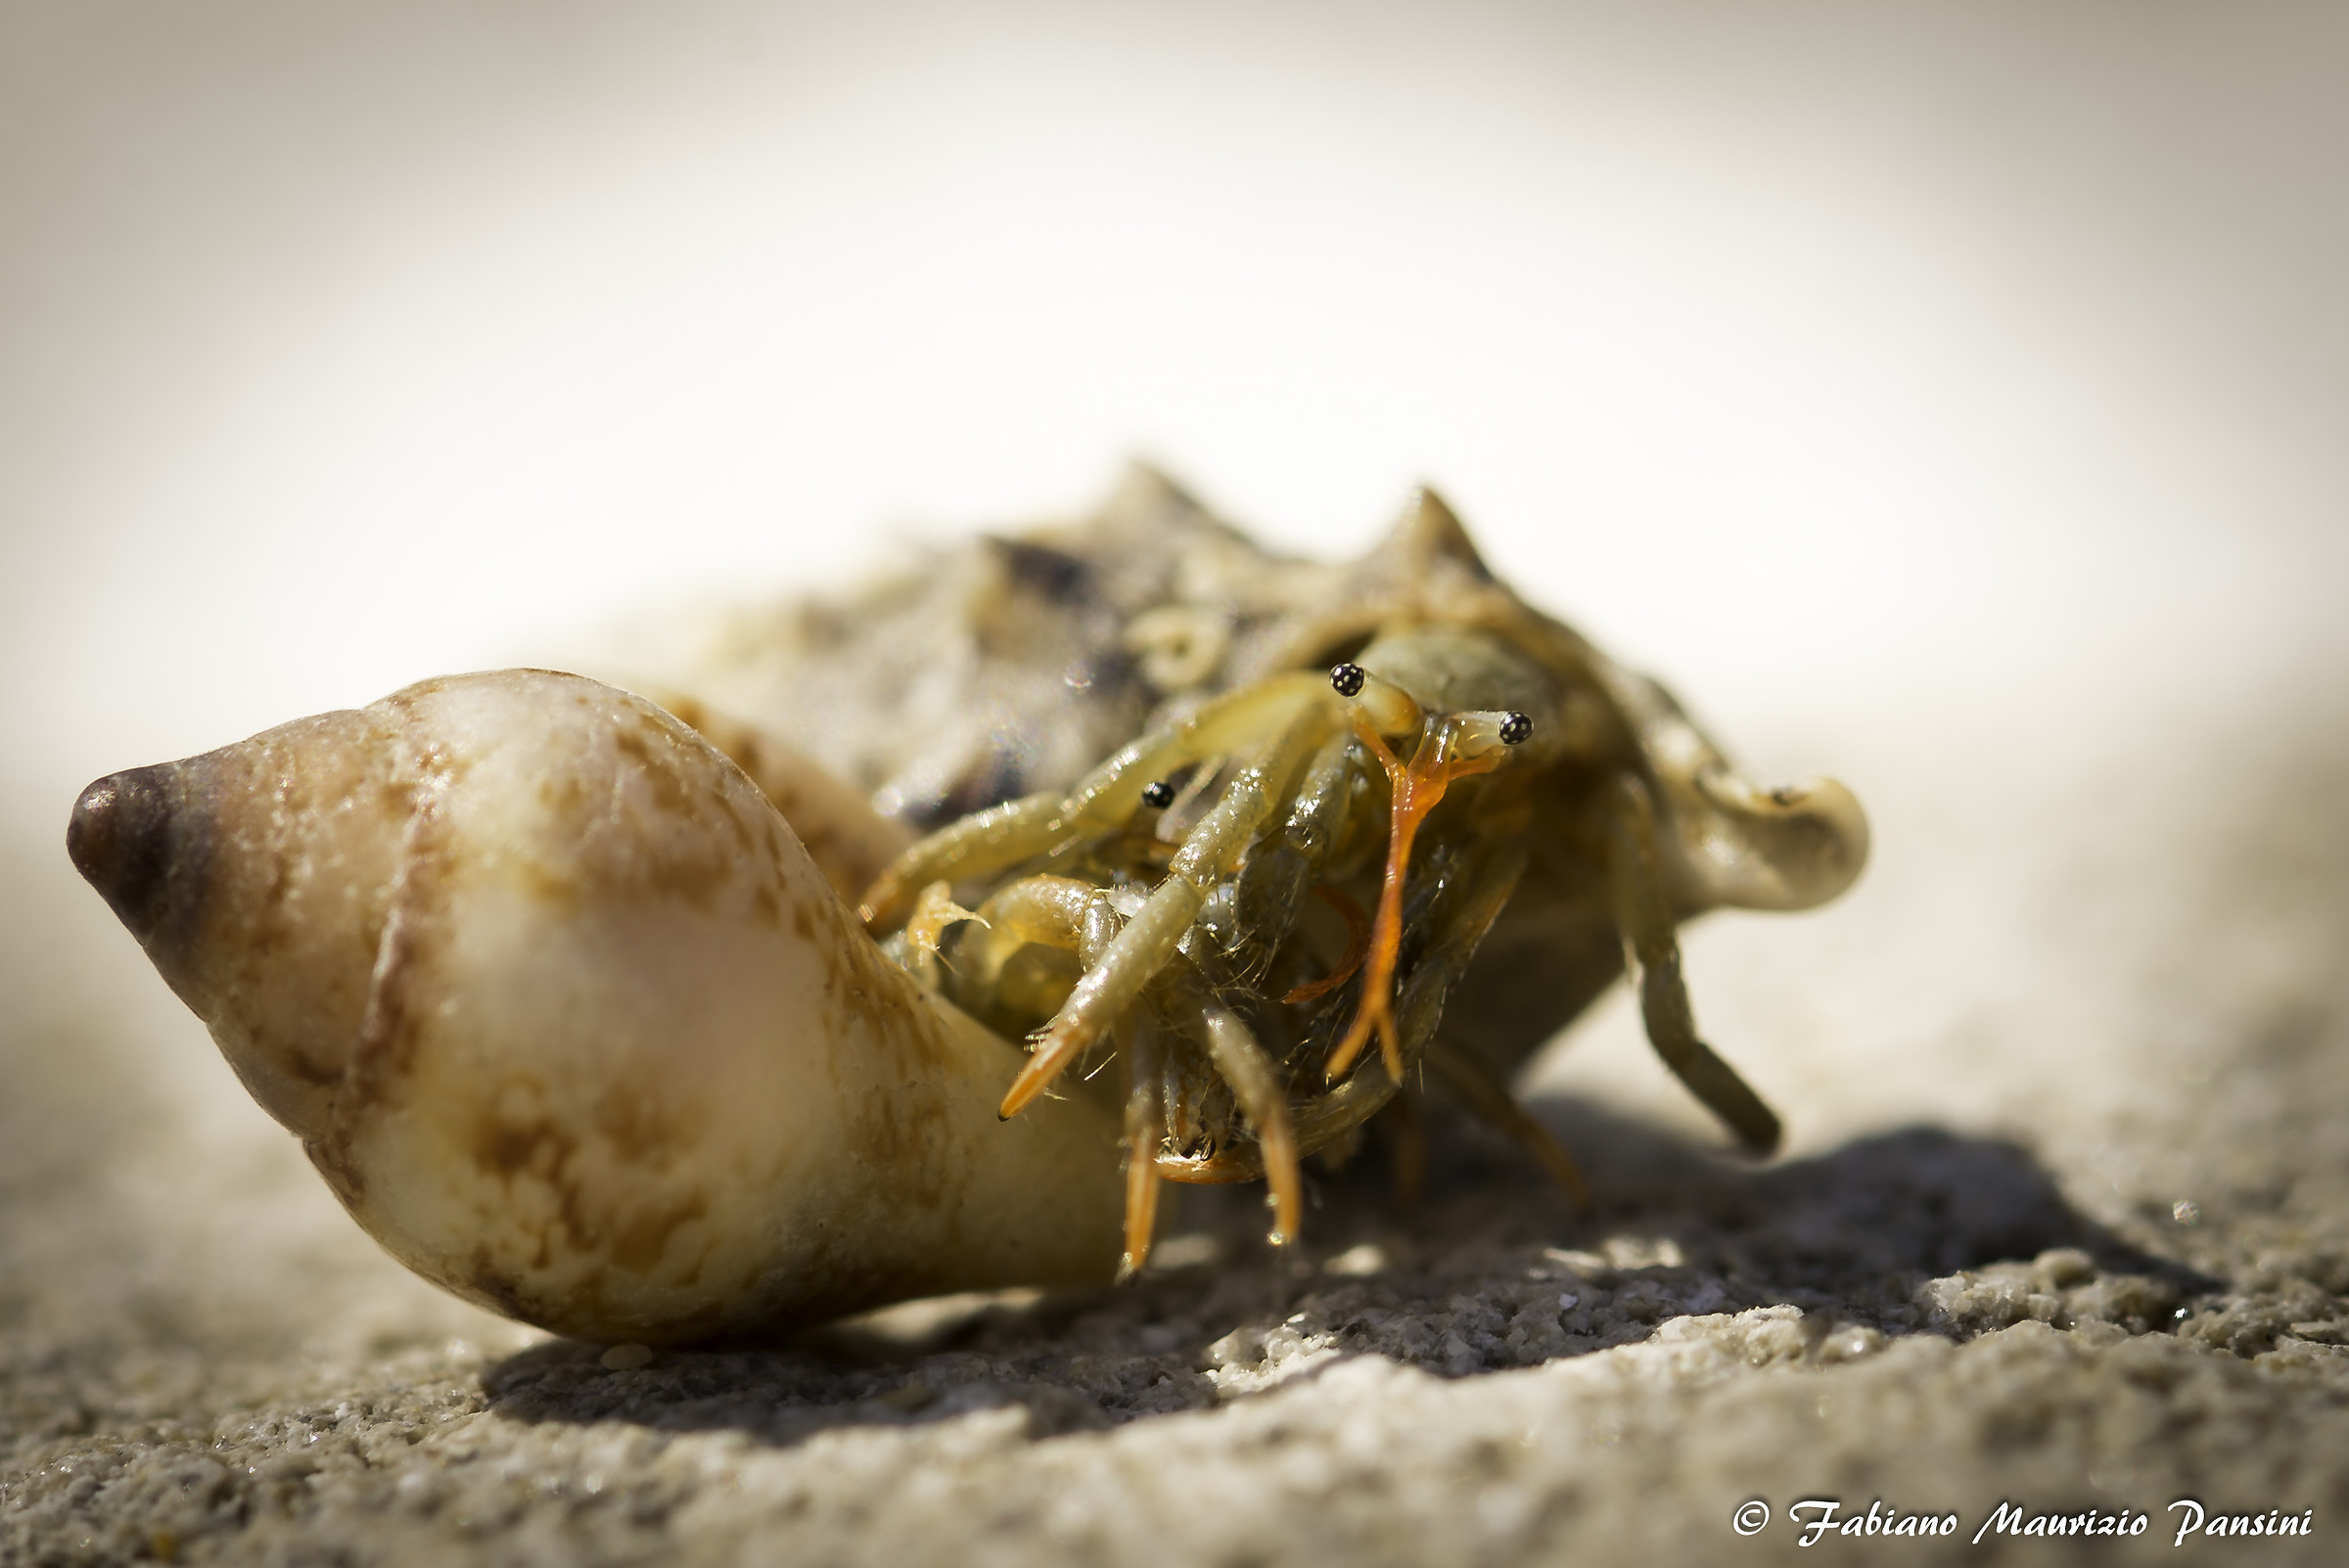 Fight between hermit crabs...